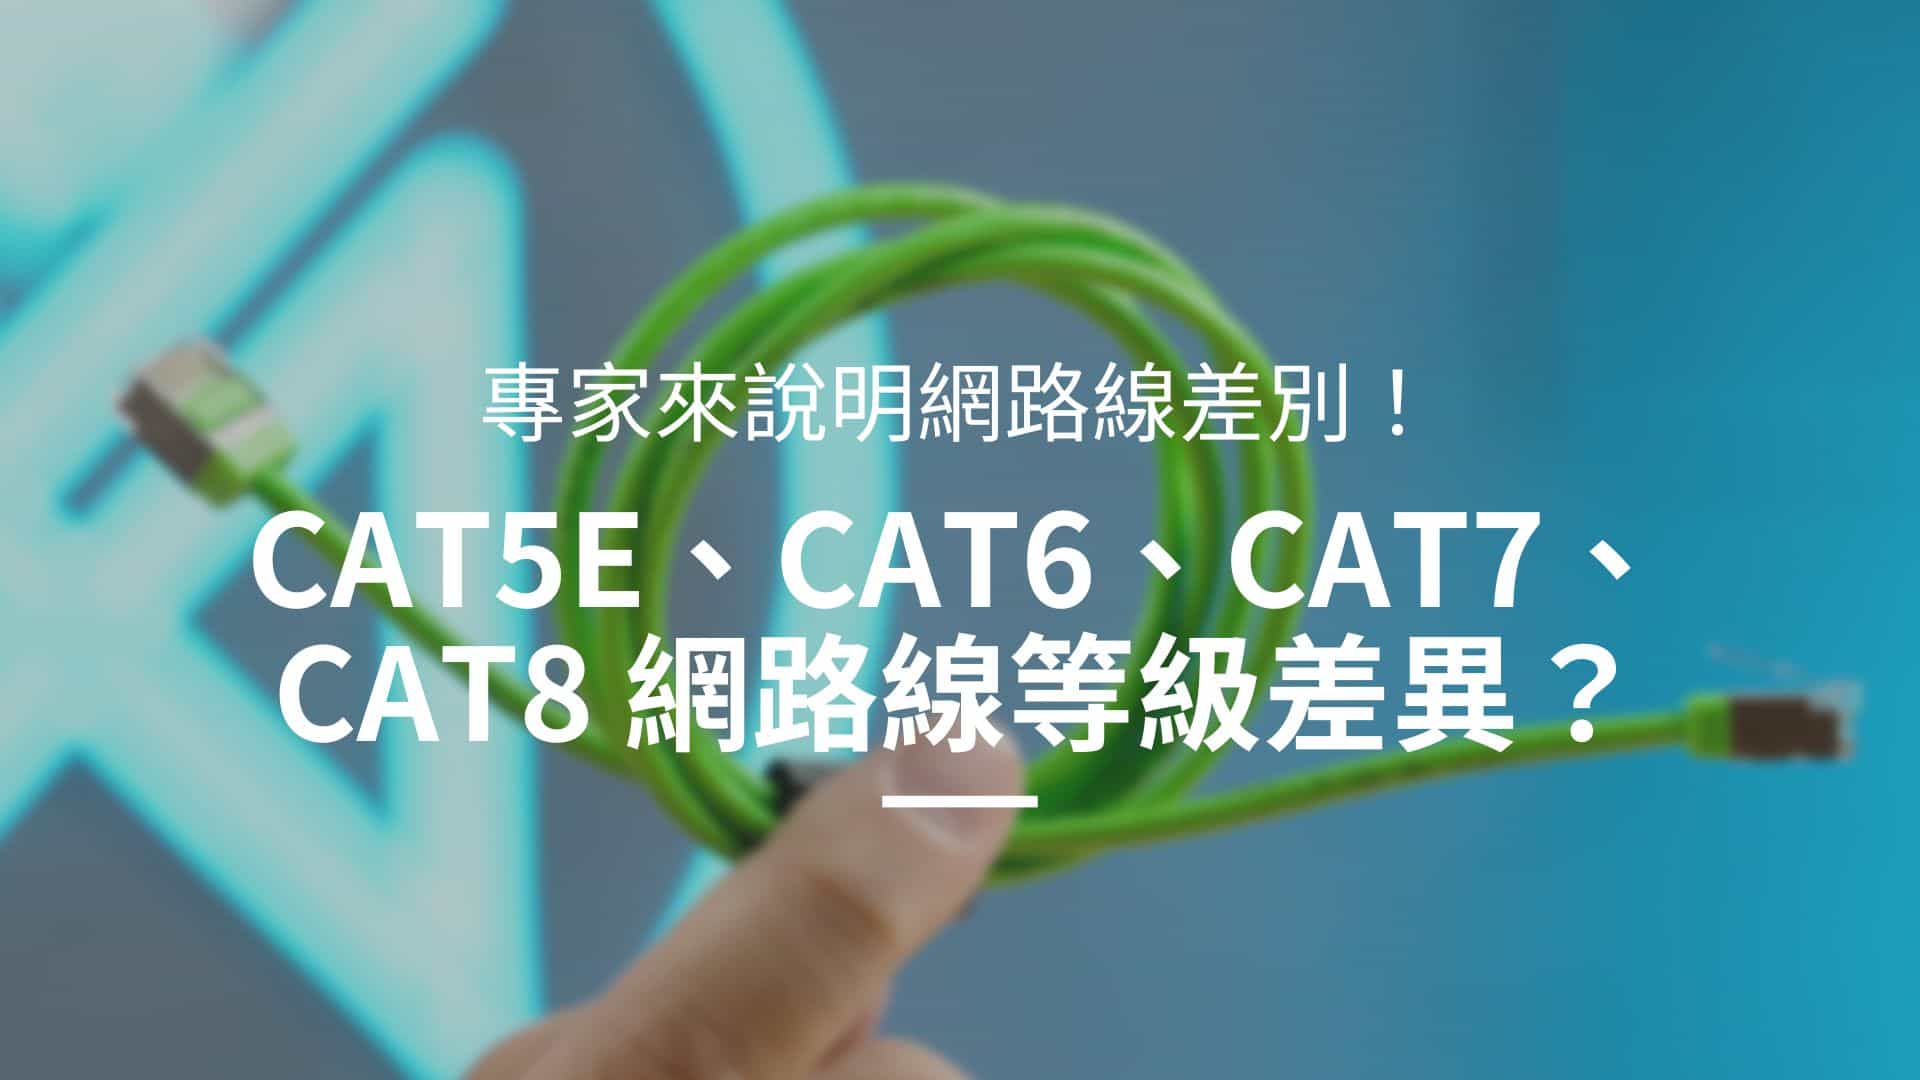 專家說明網路線差別：Cat5e、Cat6網路線等級差異在哪？應用差別？